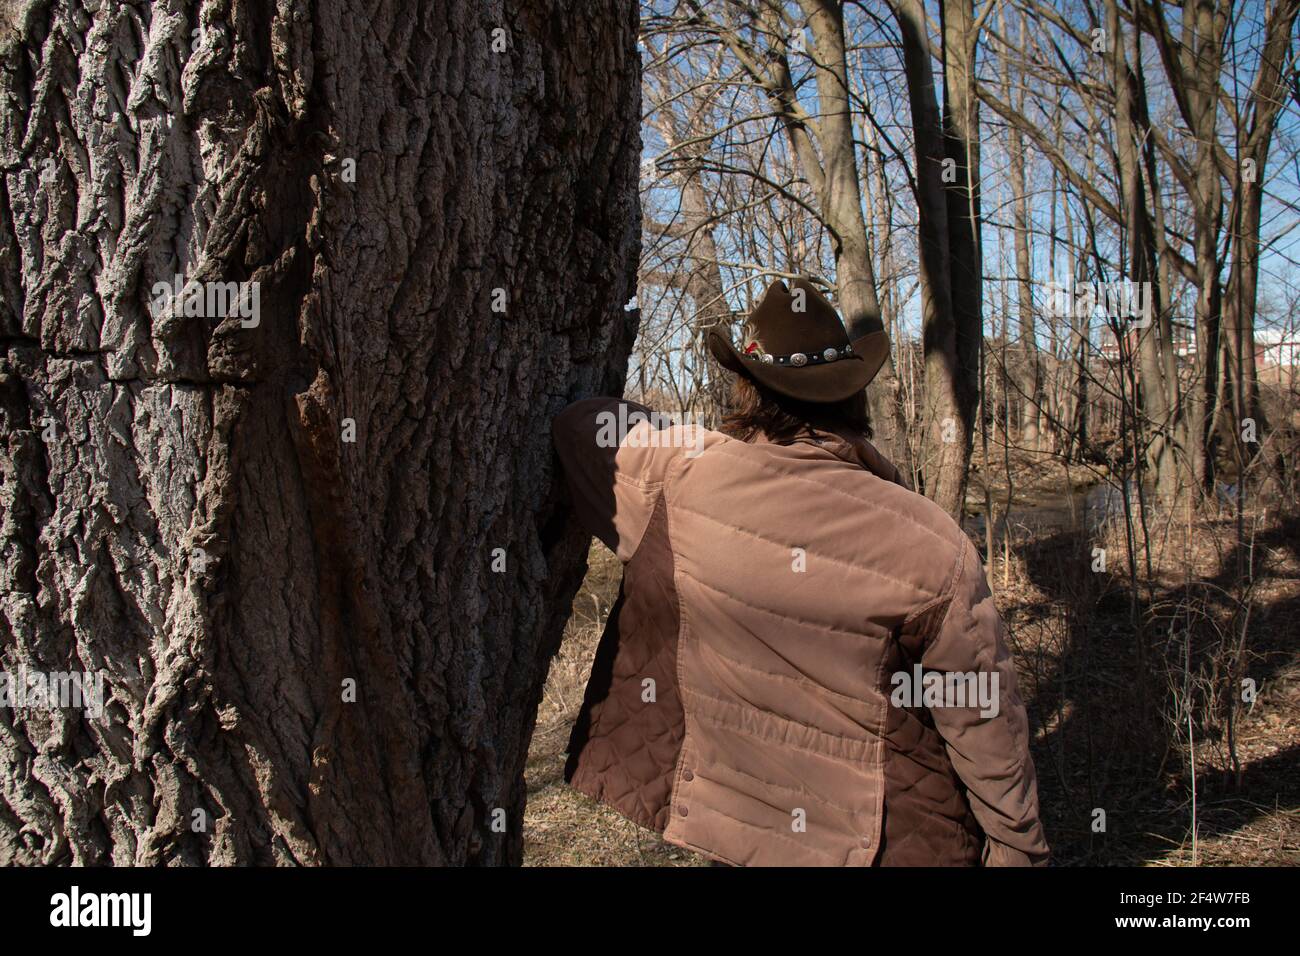 Eine Frau mit kurzen braunen Haaren trägt einen braunen Cattleman Cowboy Hut mit einer Feder und dekorativen Gürtel befestigt. Lehnt sich an einen Baum Stockfoto